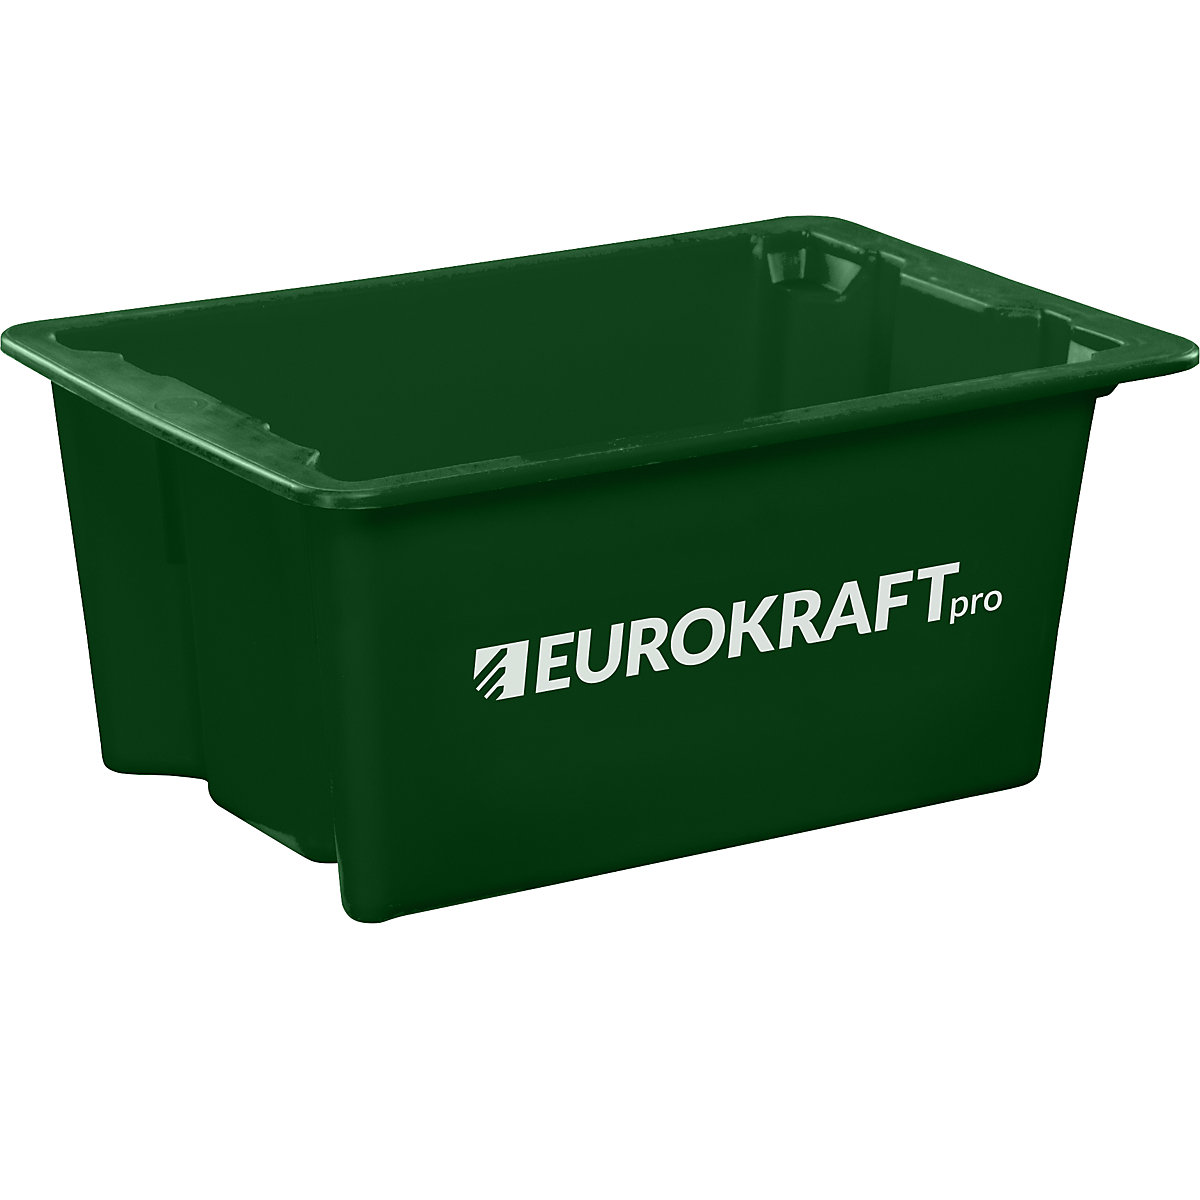 EUROKRAFTpro – Spremnik za slaganje od polipropilena pogodnog za kontakt s prehrambenim proizvodima, volumen 6 l, pak. 4 kom., zatvorene stijenke i dno, u zelenoj boji